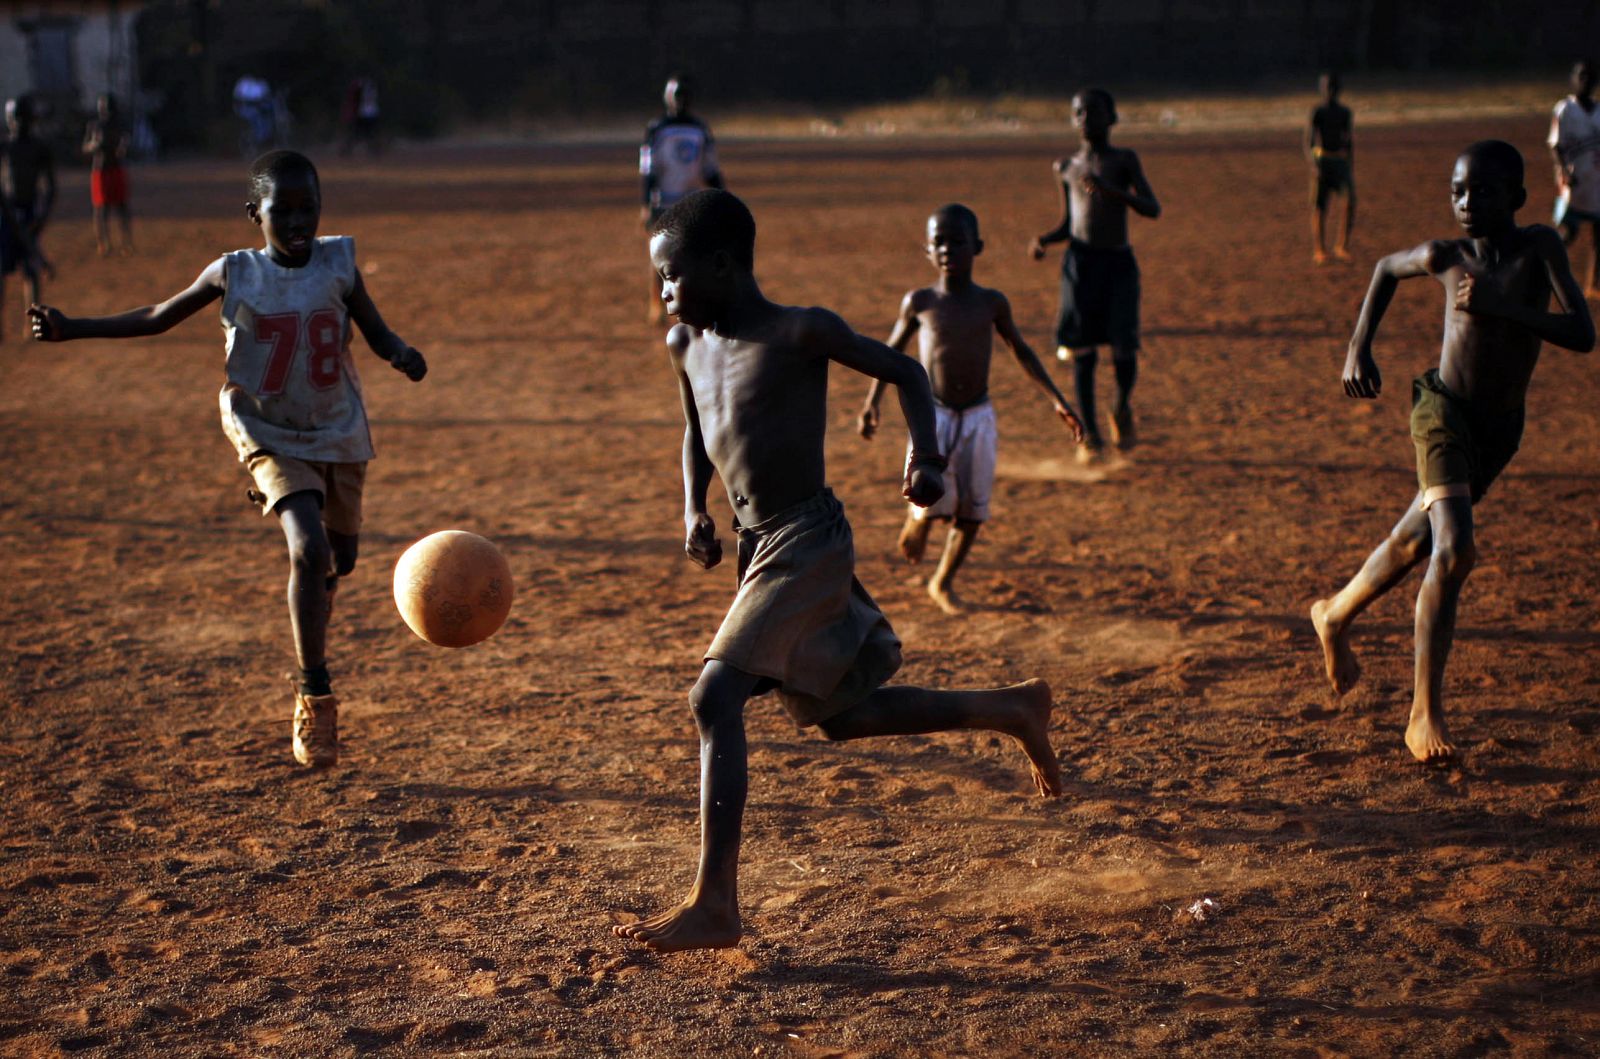 El fútbol es la principal vía de escape de muchos niños africanos cuyas vidas se desenvuelven en condiciones muy duras.